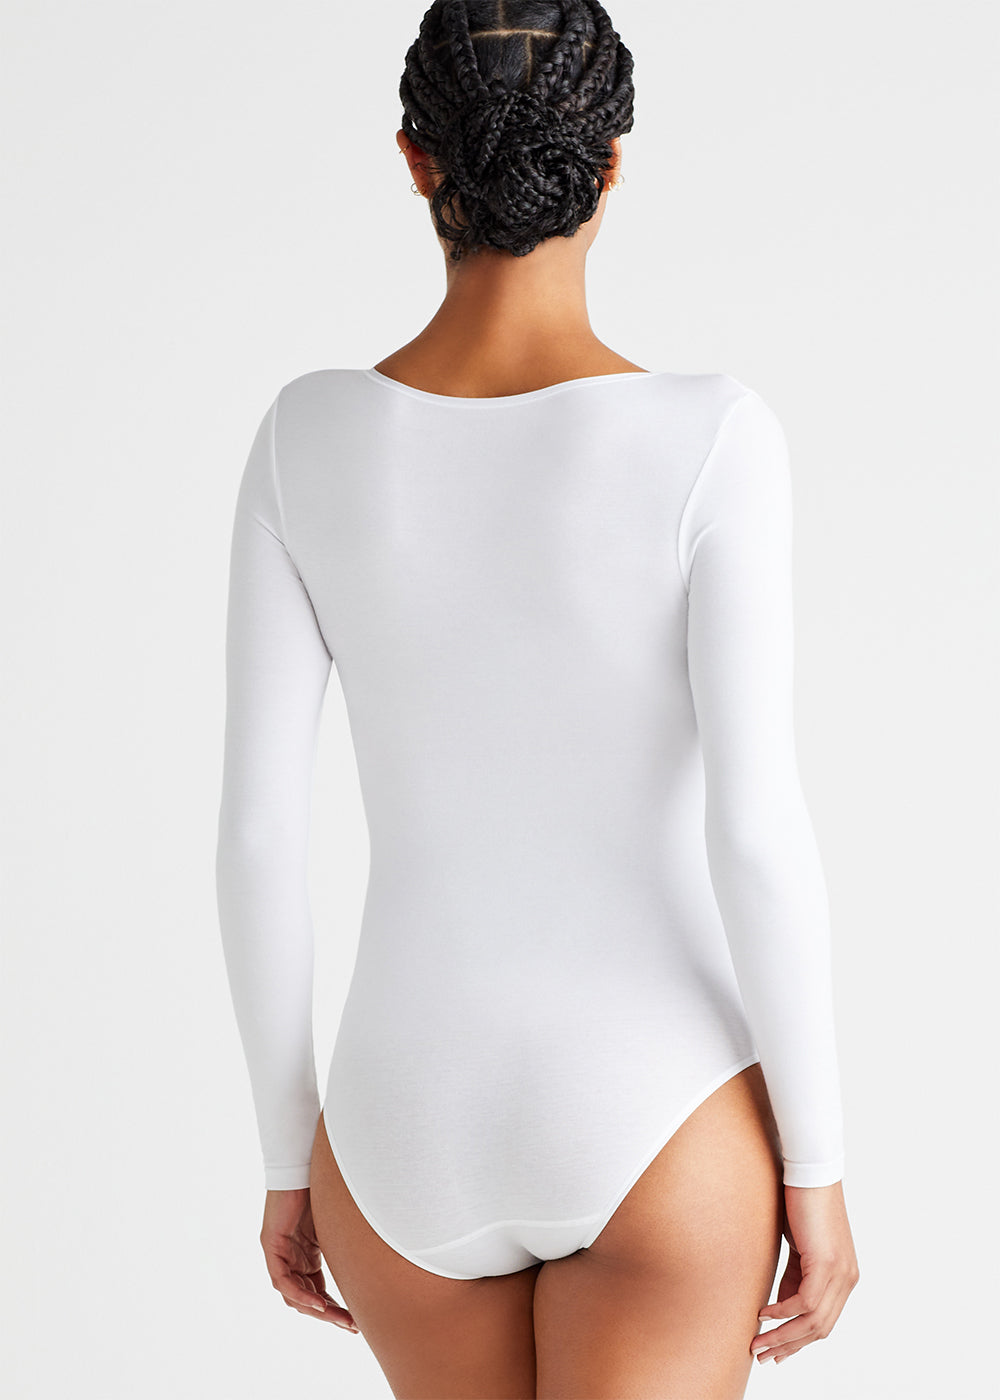 Yummie Katrina Cotton Seamless Rib Bodysuit in White M/L New Nwt Women's  Top